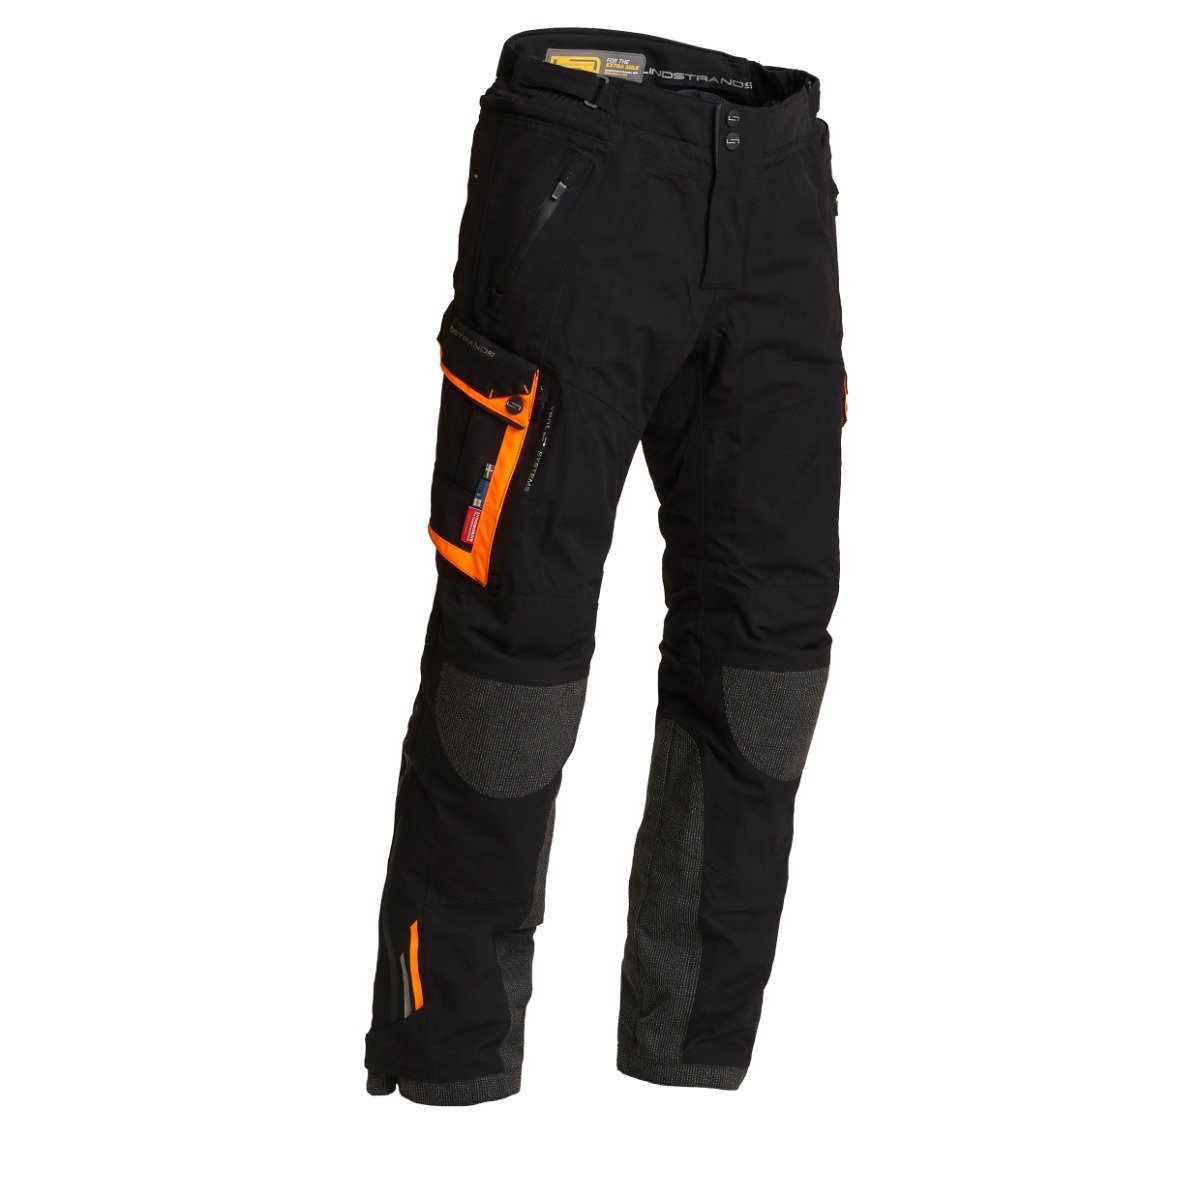 Image of Lindstrands Textile Pants Sunne Black Orange Size 54 ID 6438235187724